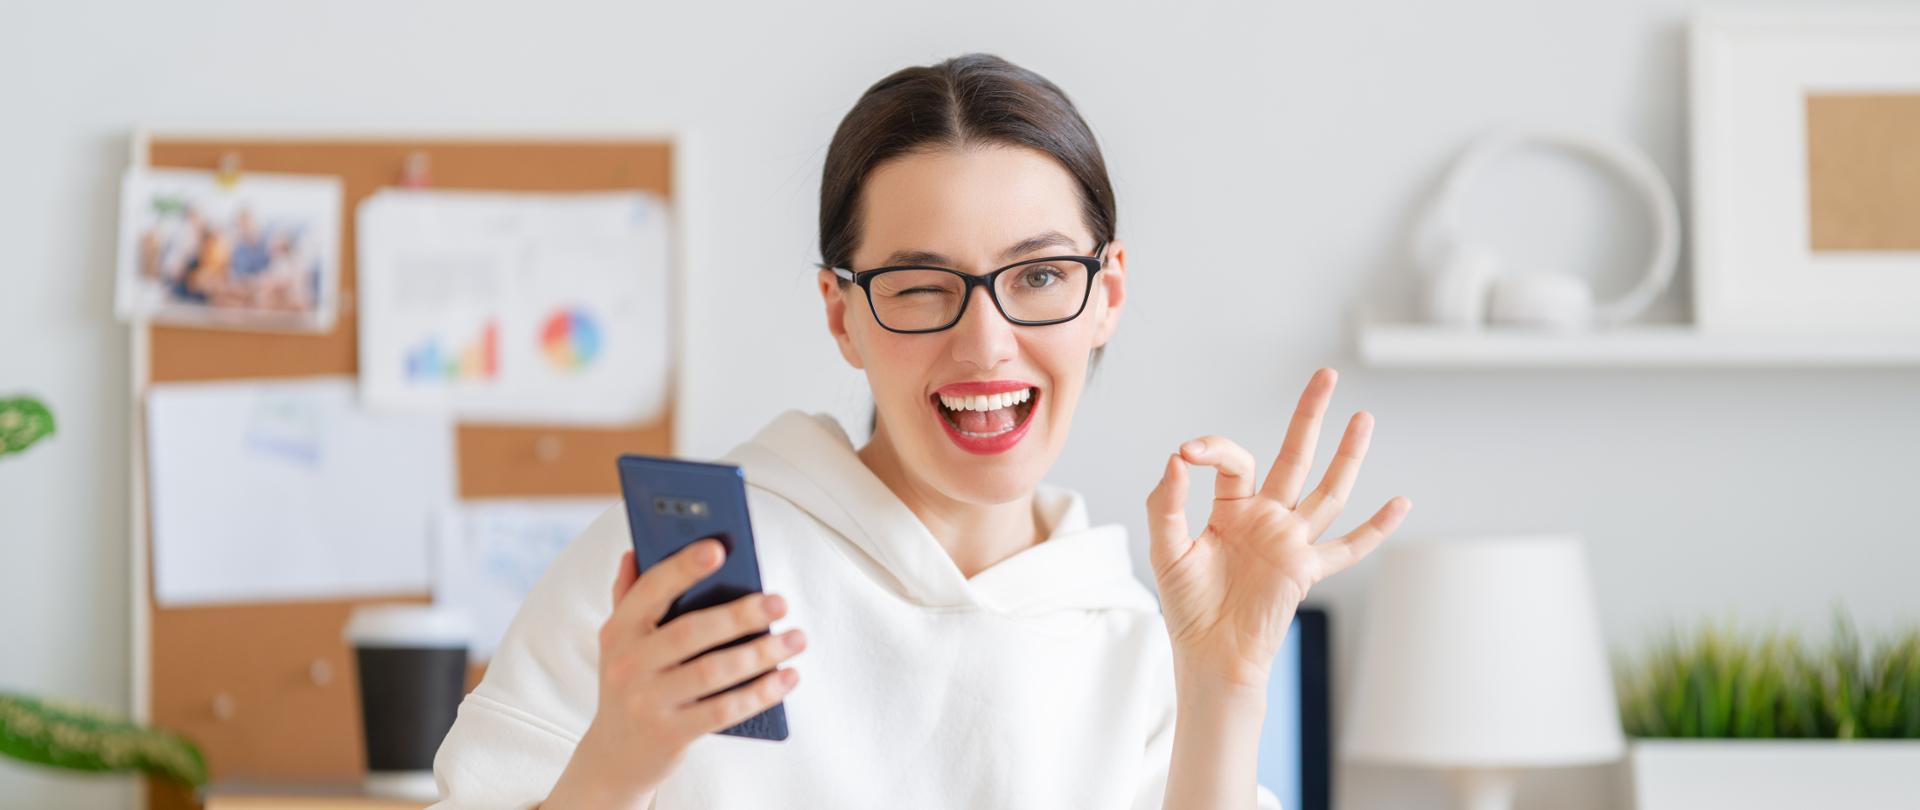 Uśmiechnięta kobieta trzymają w prawej dłoni smartfon, lewą pokazuje znak ok, puszcza oko.